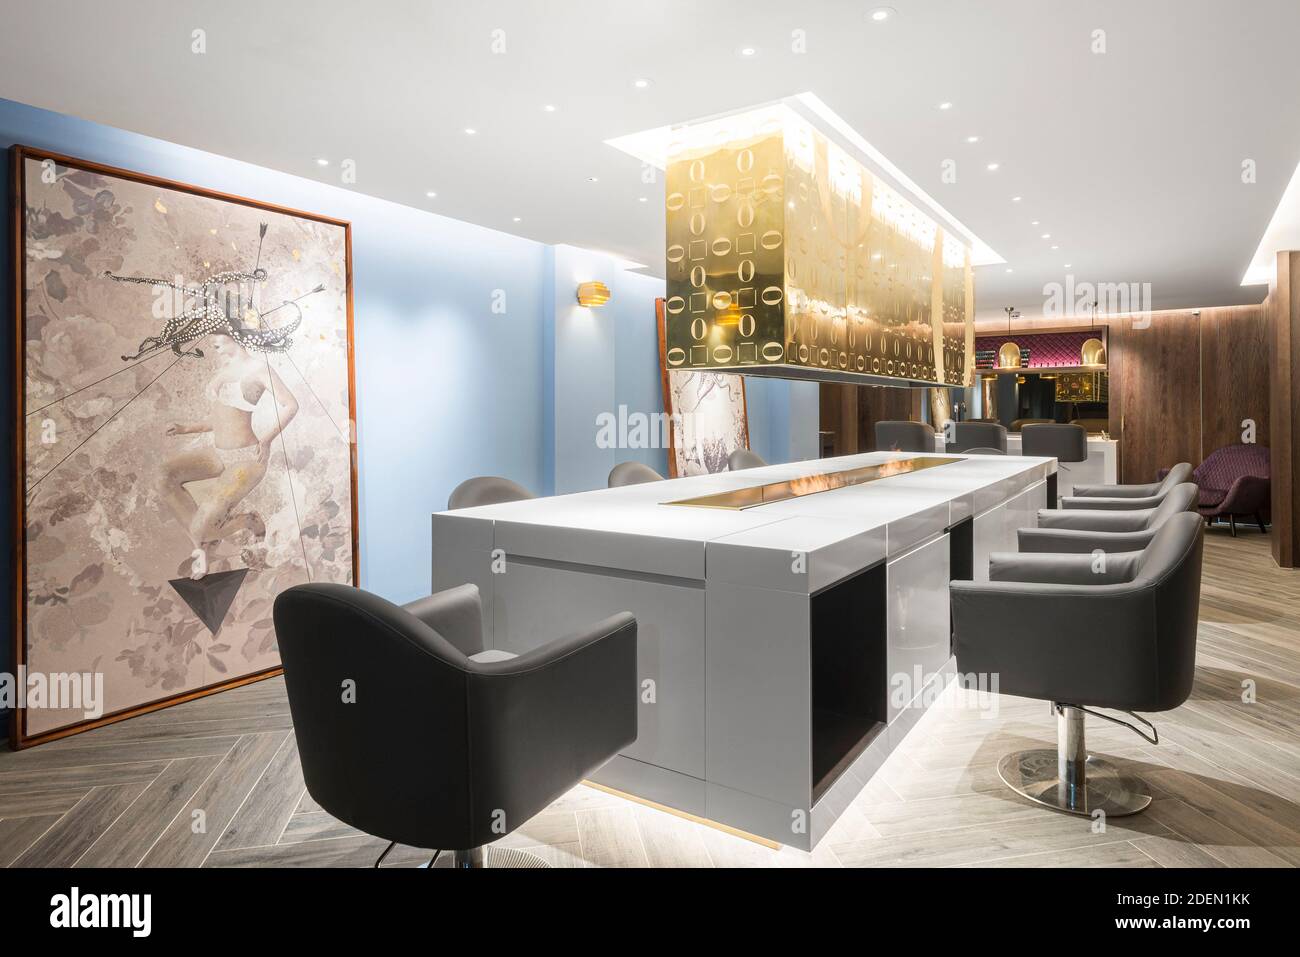 Postes de coupe de cheveux. Salon 64, Londres, Royaume-Uni. Architecte: Jak Studio, 2020. Banque D'Images